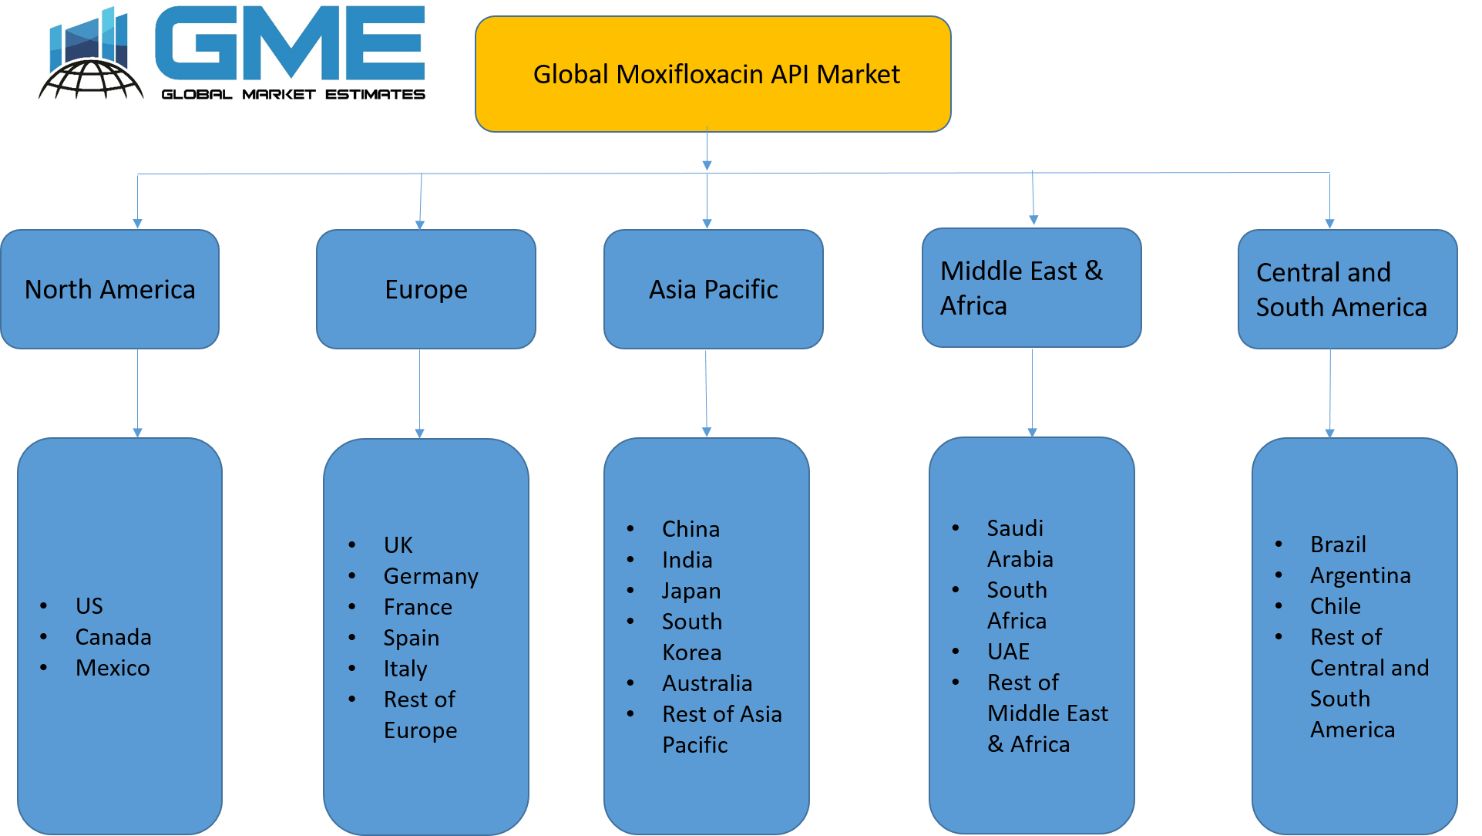 Global Moxifloxacin API Market - Regional Analysis